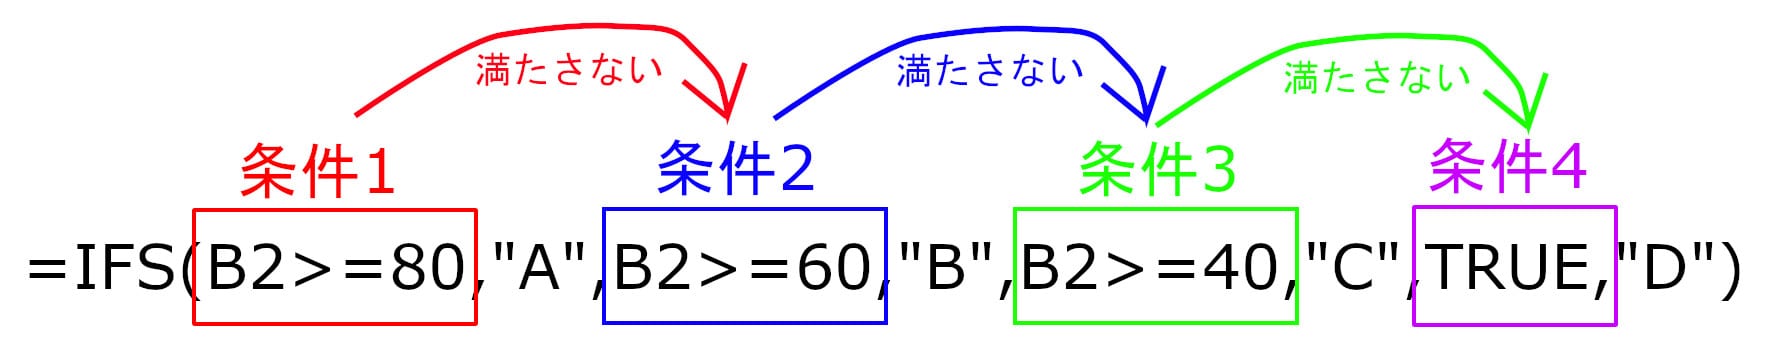 IFS(条件1,結果1,→満たさない→条件2,結果2